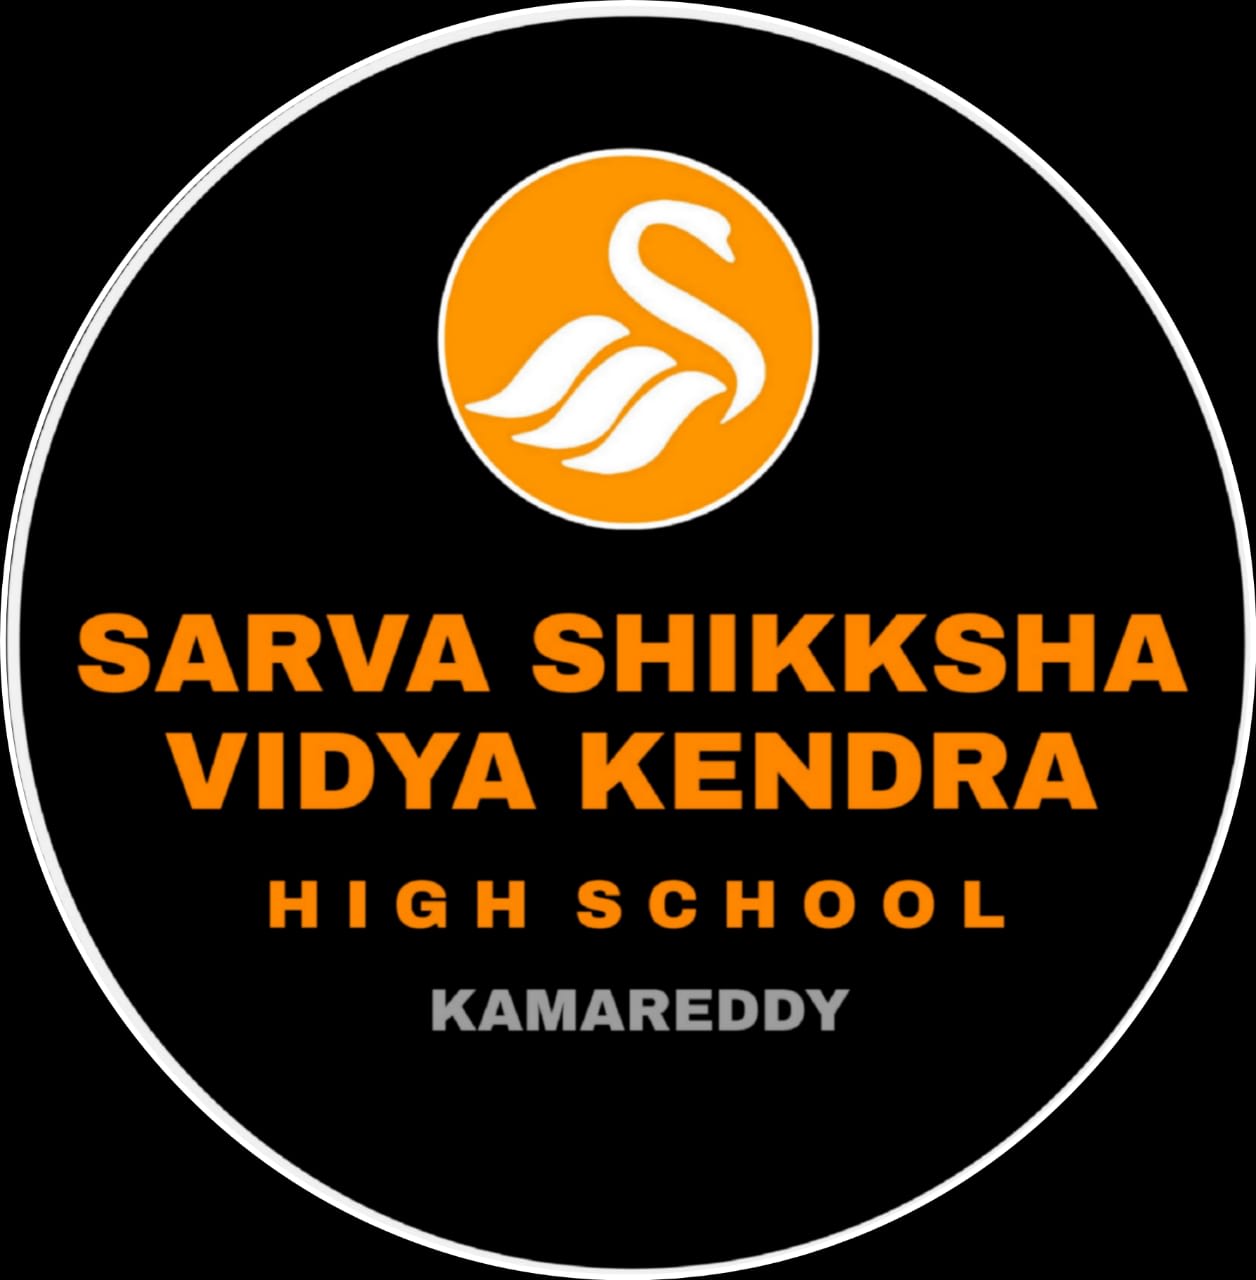 Sarva Shiksha Vidya Kendra